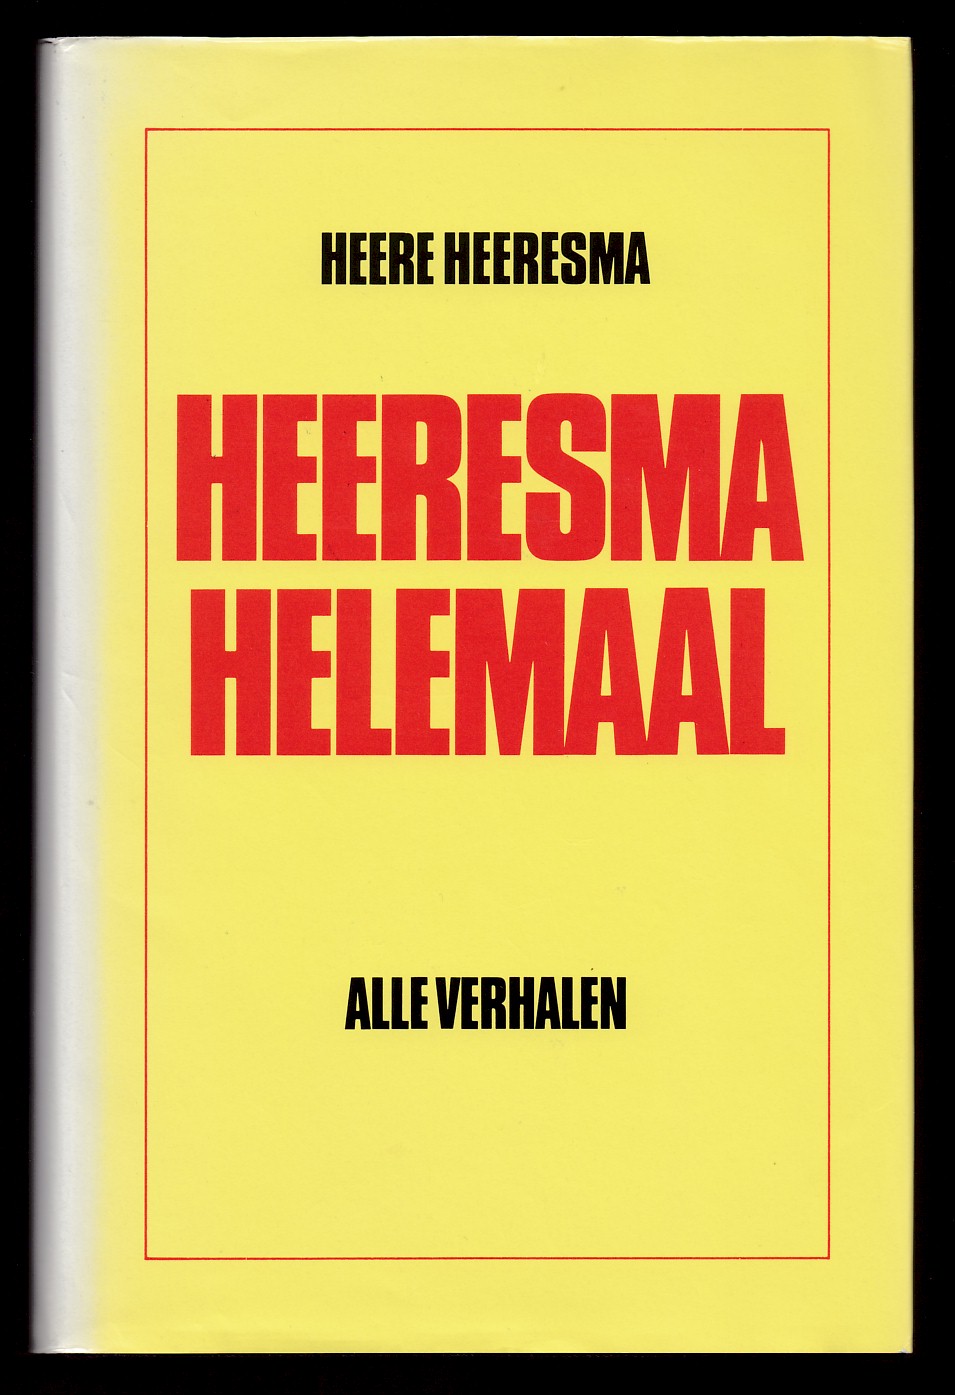 Heeresma, Heere - Heeresma helemaal, alle verhalen (1957-1977)